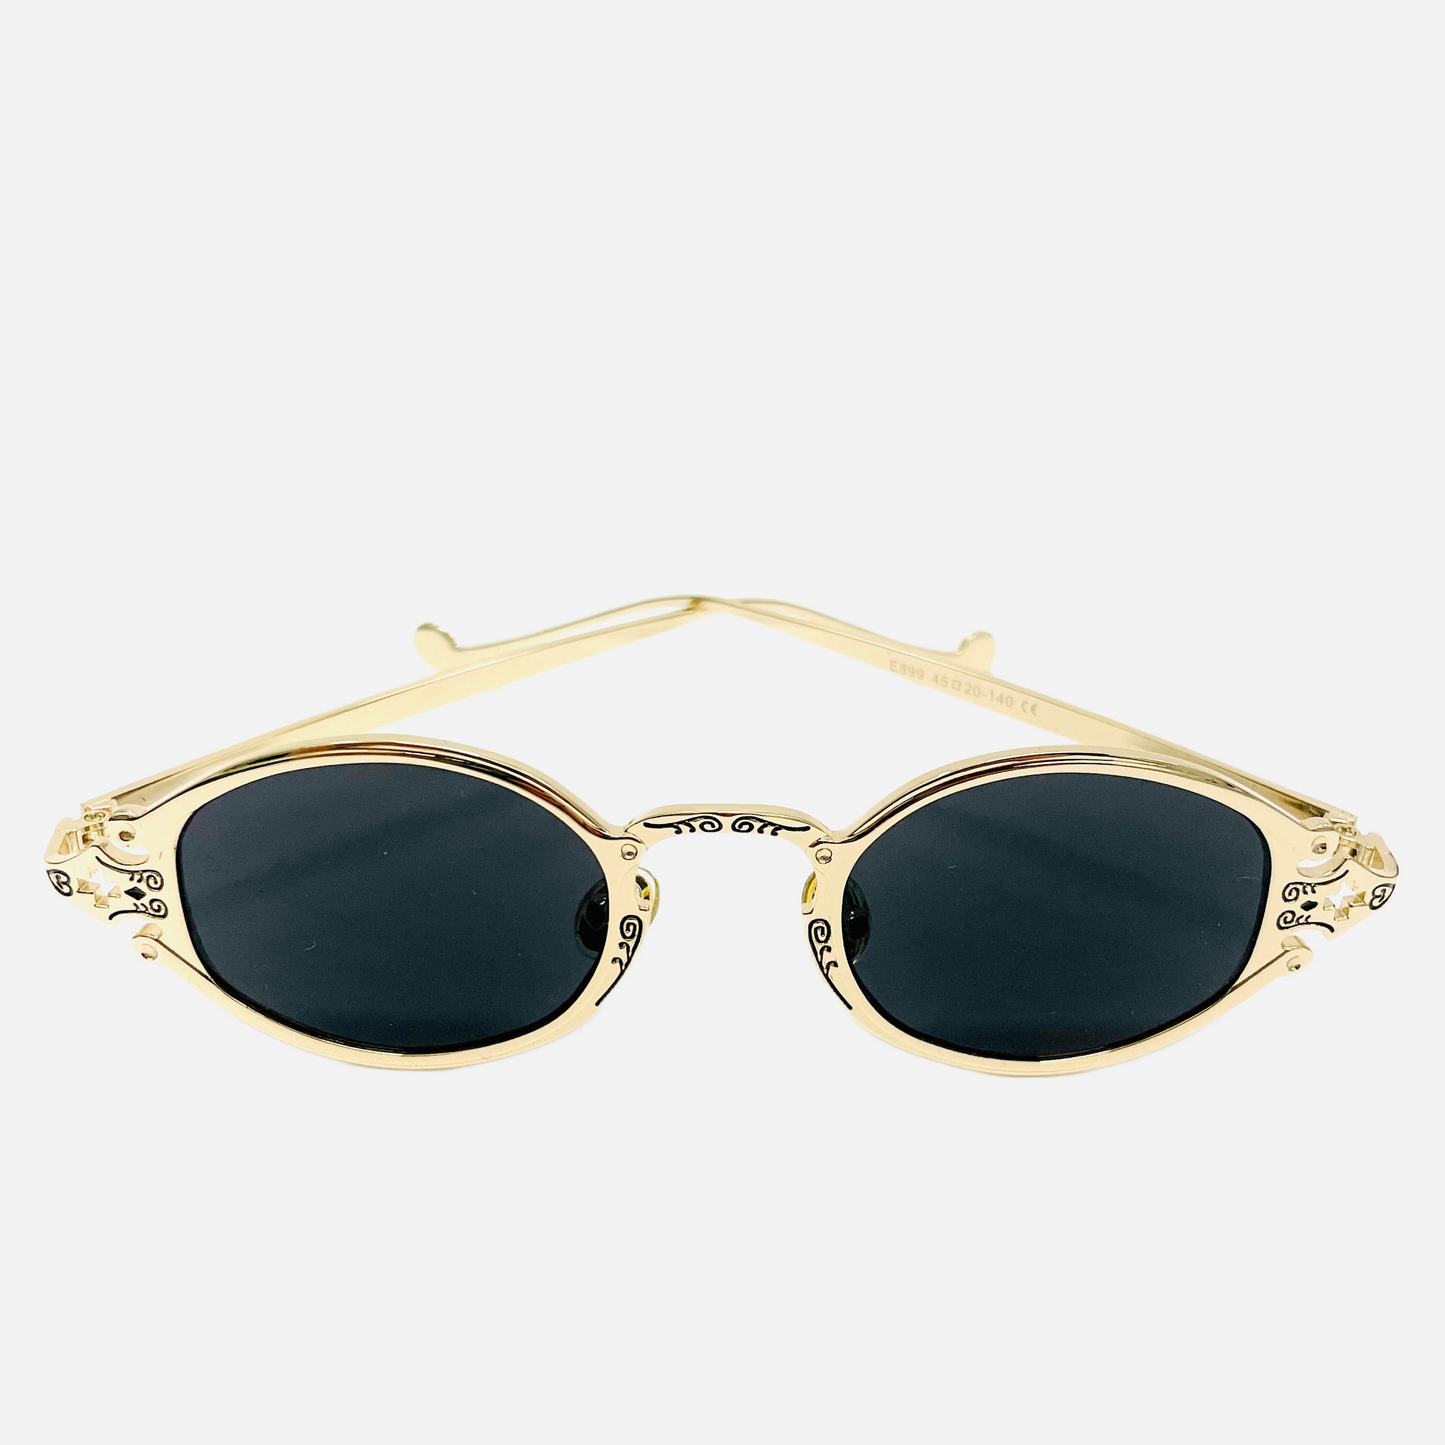 Vintage-Jean-Paul-Gaultier-Sonnenbrille-Sunglasses-Model-56-0001-gold-front-1